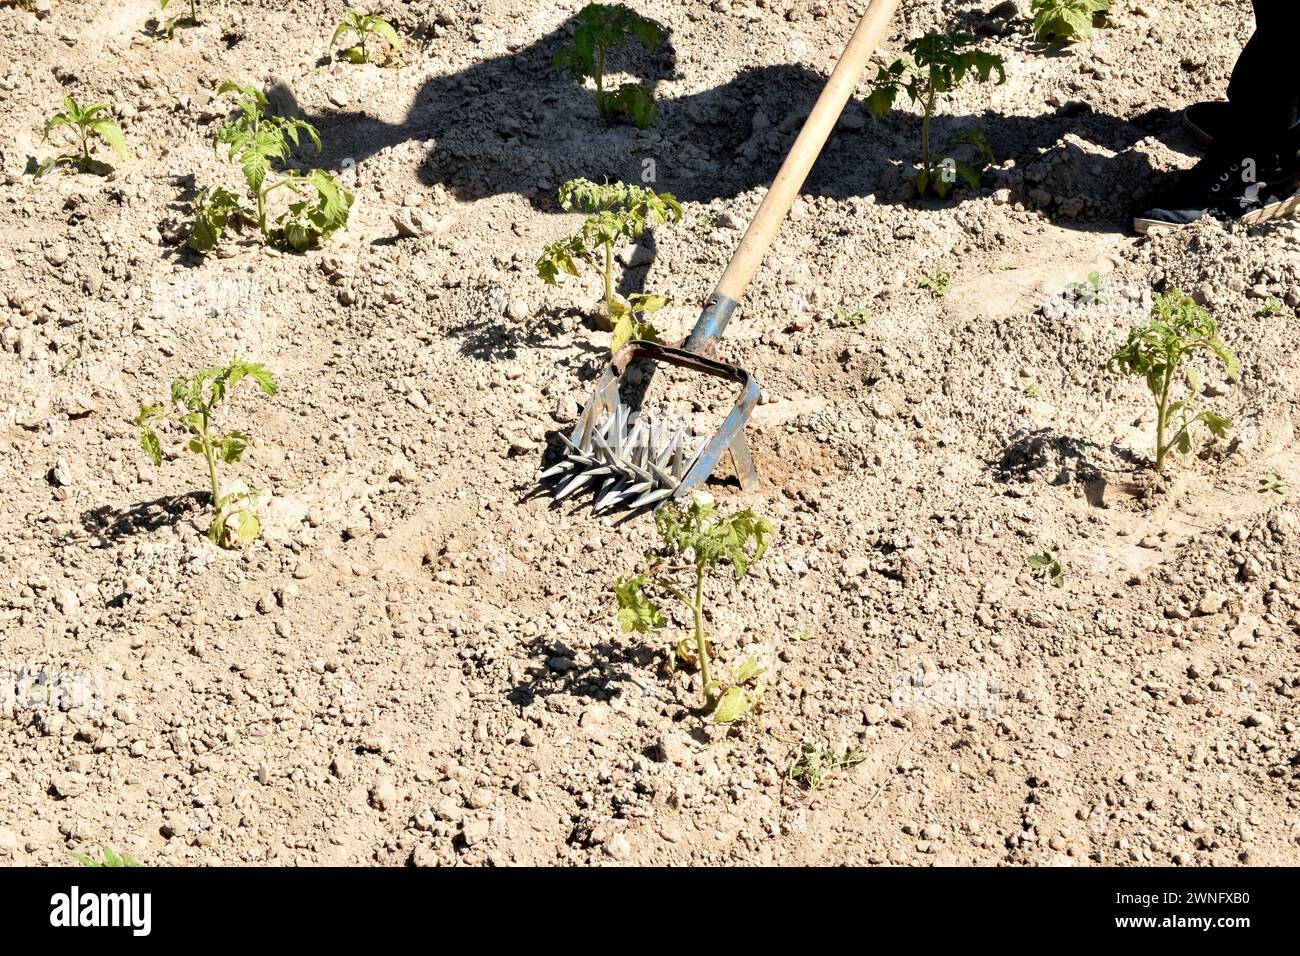 Das Bild zeigt ein landwirtschaftliches Werkzeug, mit dem Landwirte Unkraut aus dem Garten entfernen. Stockfoto